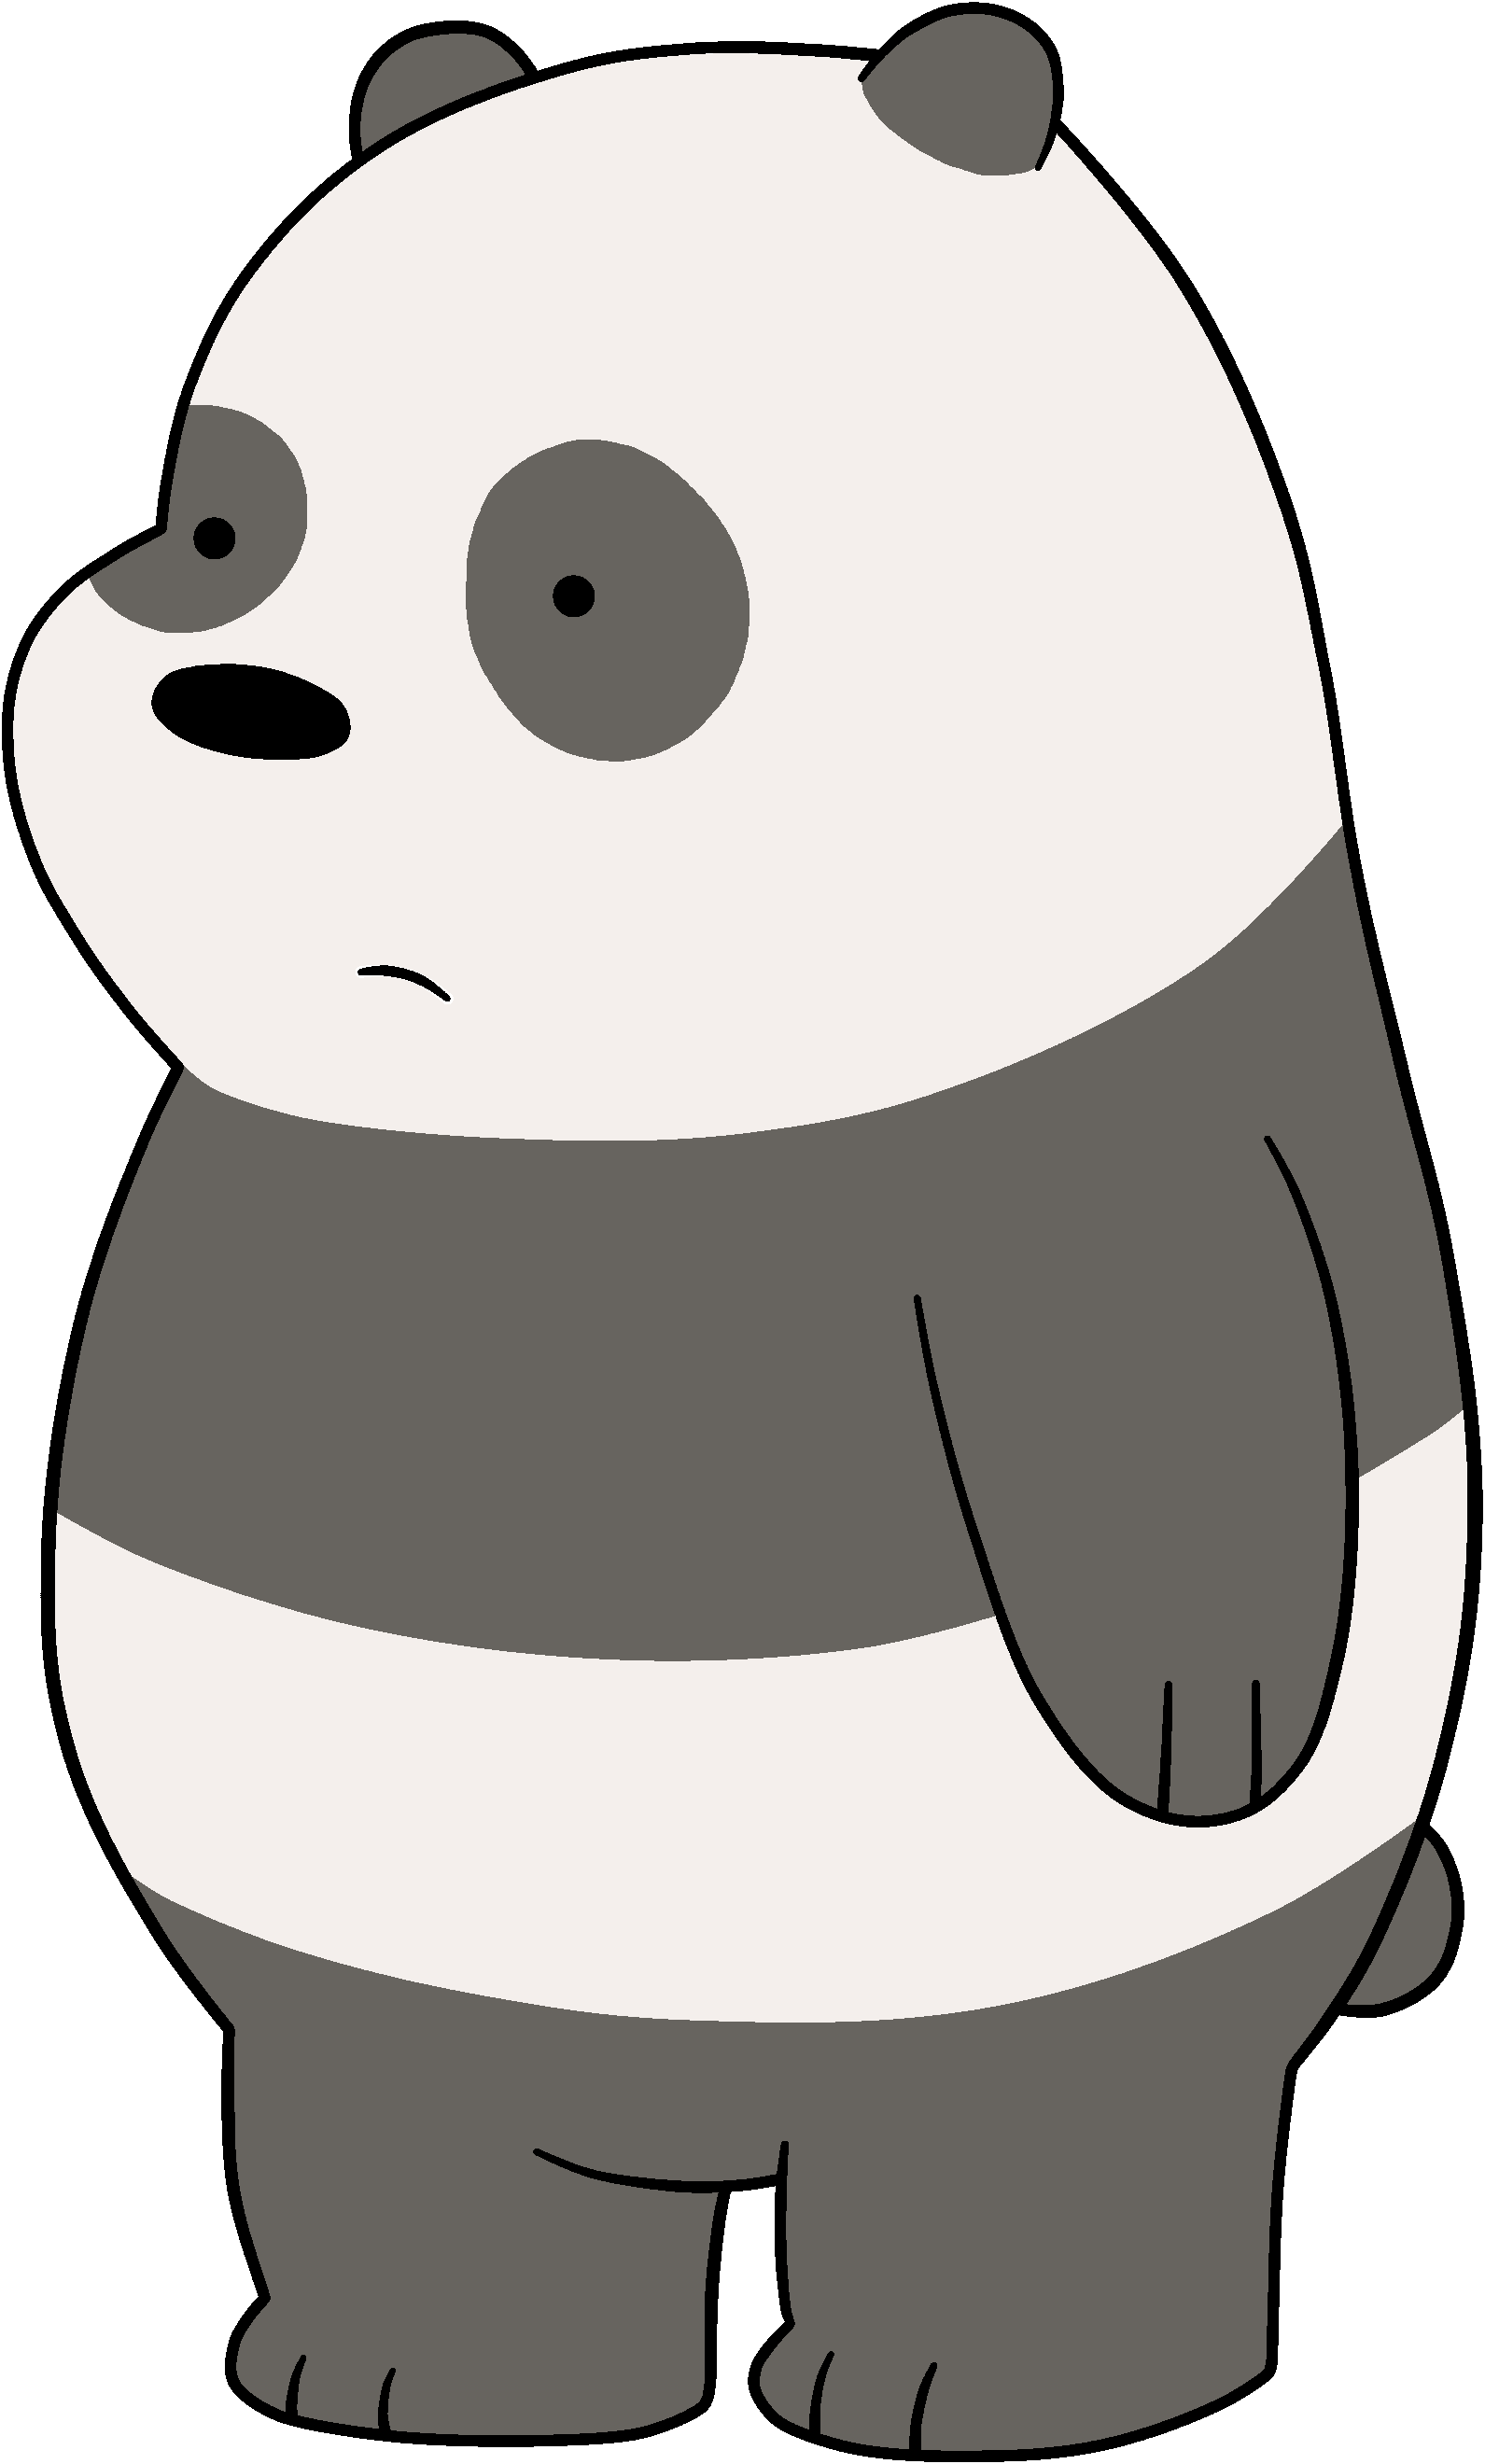 Cub Pan-pan - Panda From We Bare Bears (1591x2640)